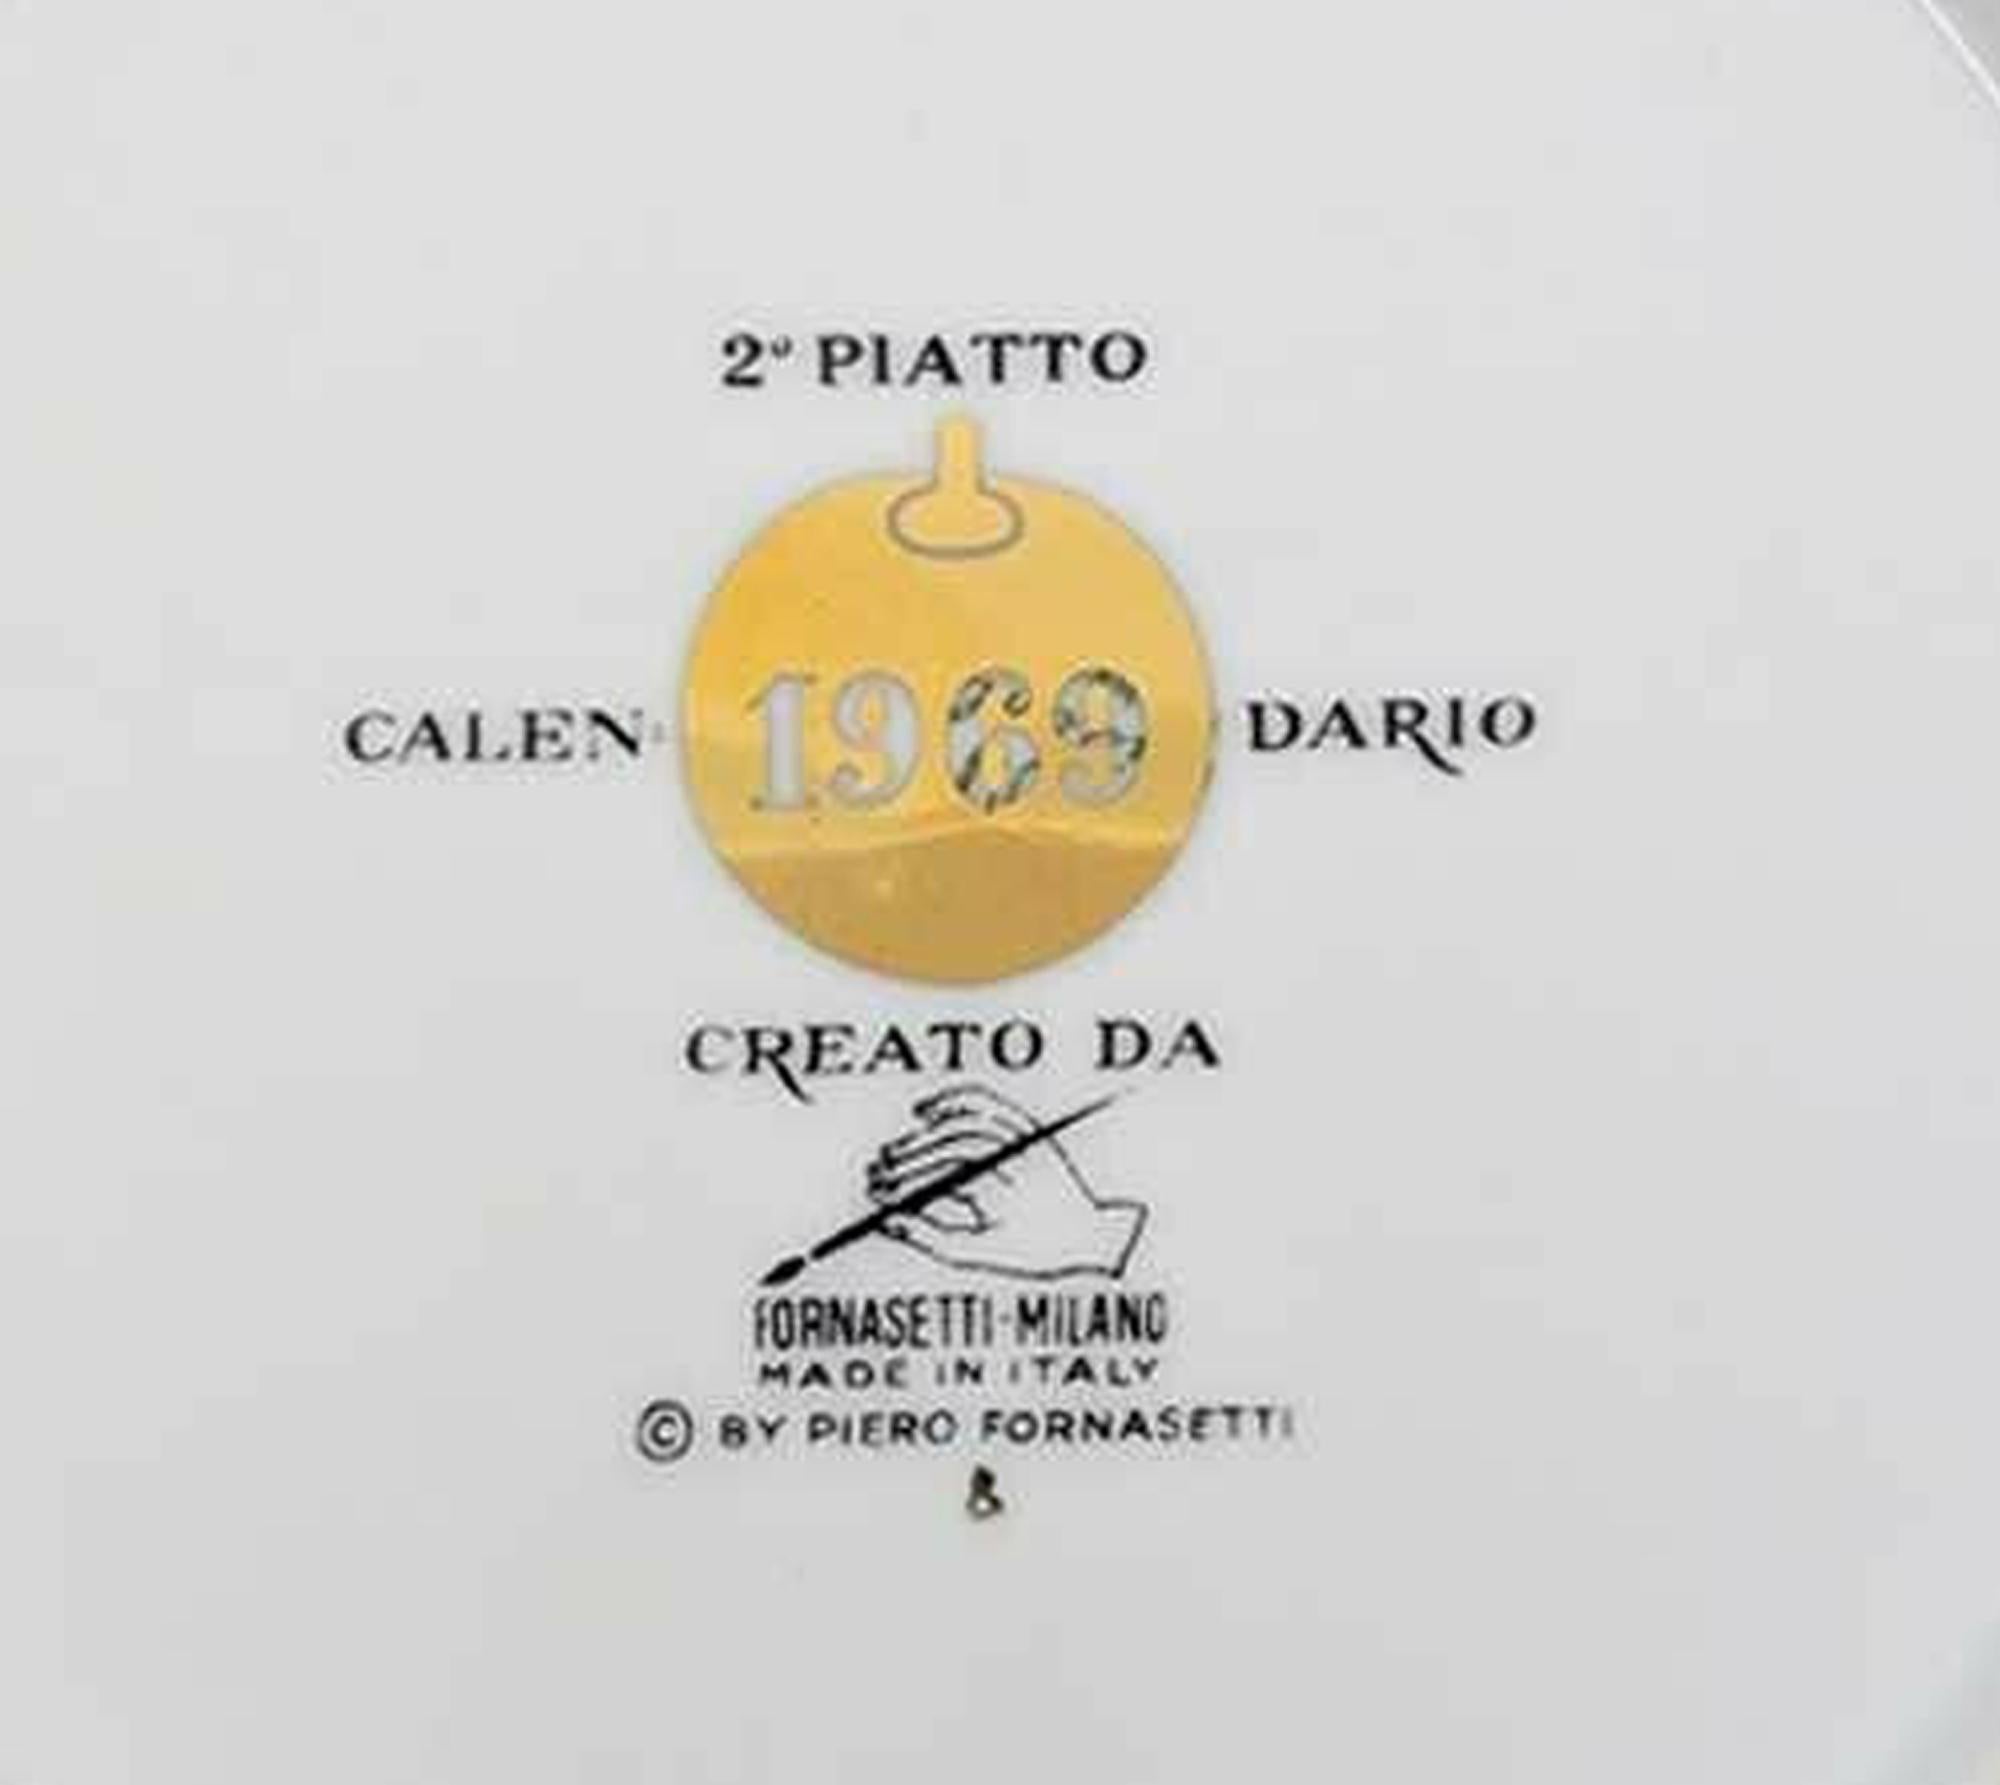 Plaque de calendrier Piero Fornasetti pour l'année 1969,

Le design de l'assiette-calendrier en porcelaine de Fornasetti de 1969 représente une grappe de raisin, chaque raisin contenant un mois différent de l'année, avec des salutations de saison